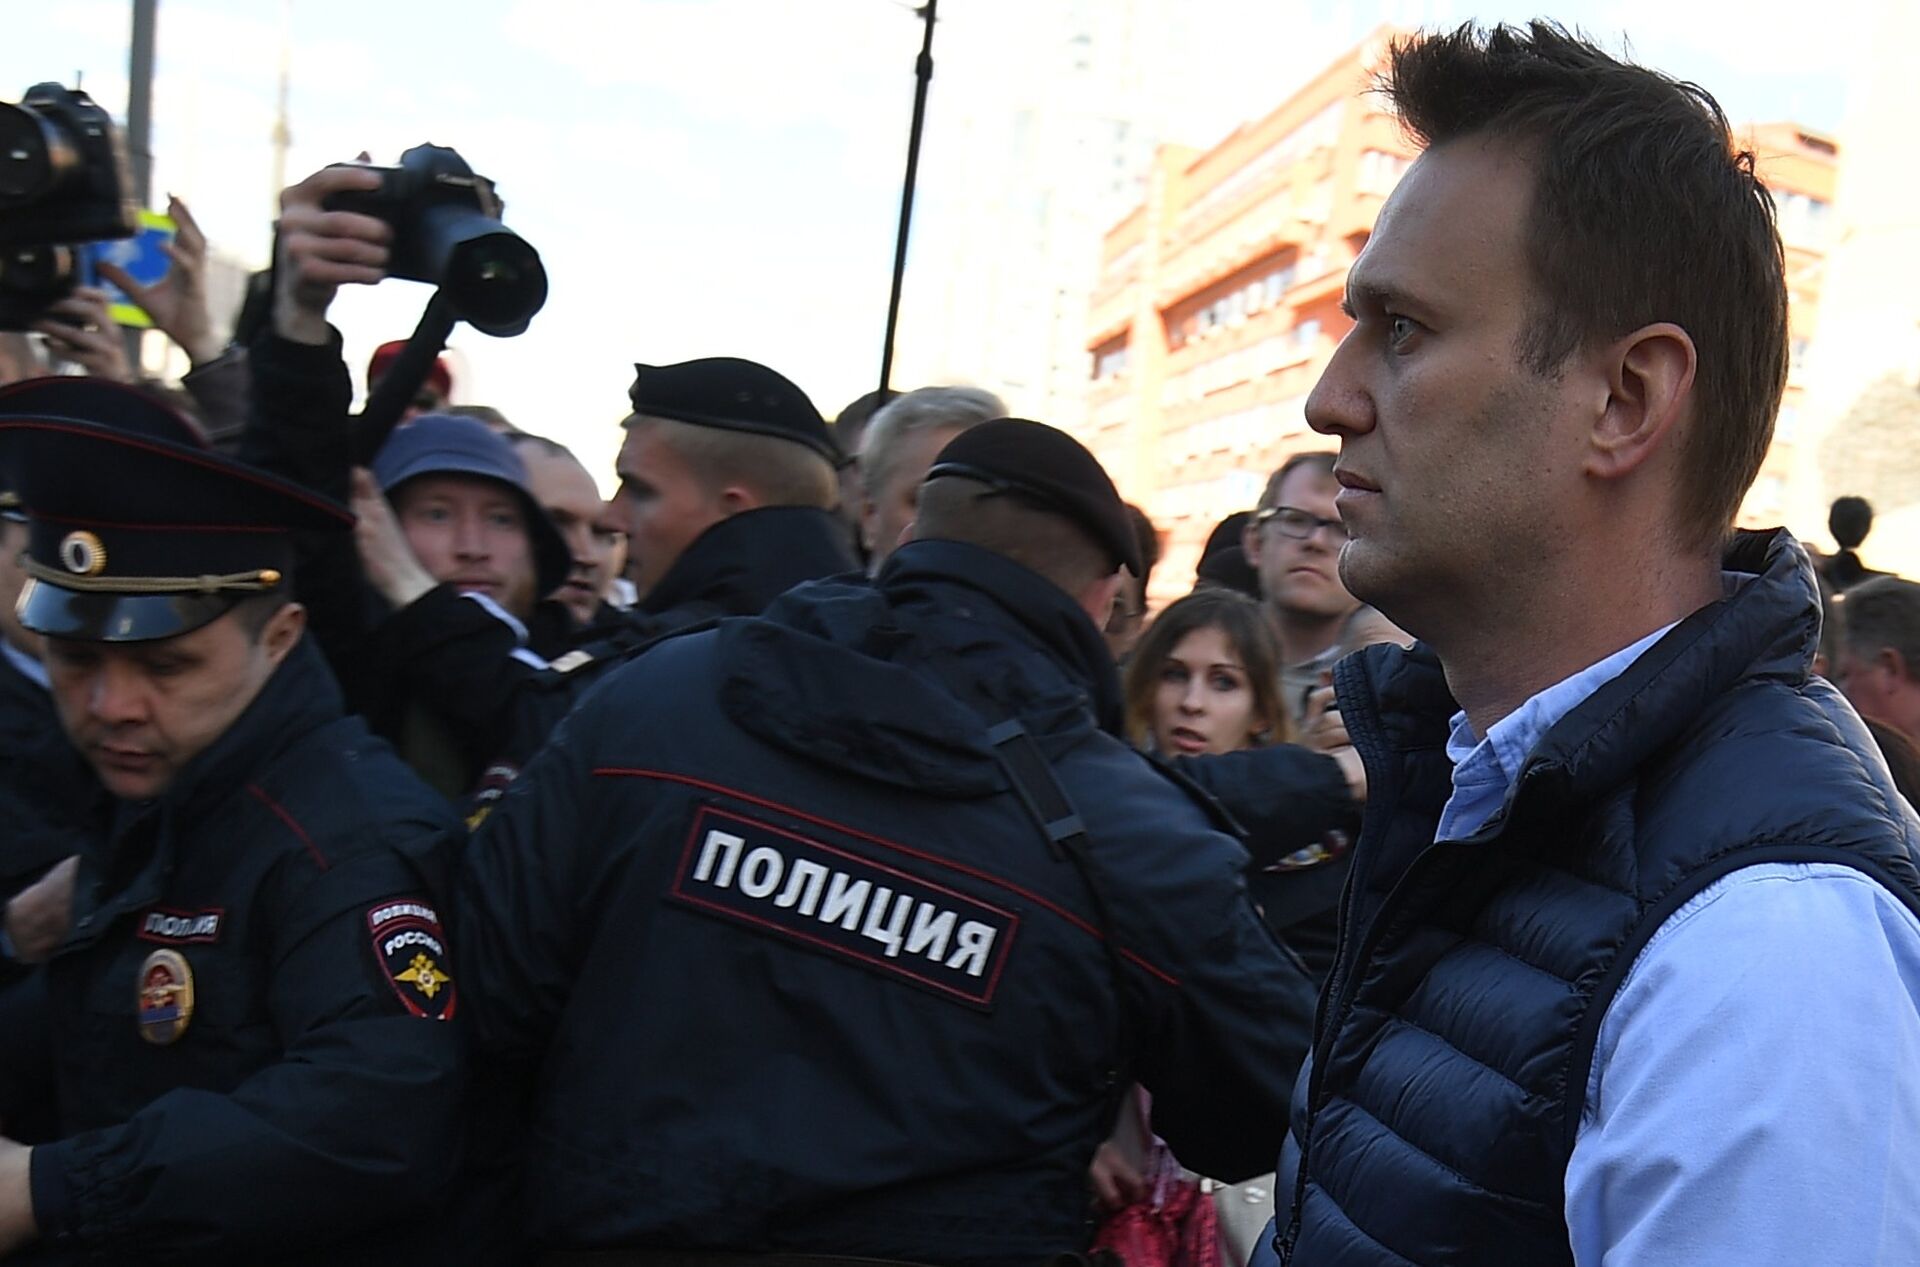 EUA criticam condenação de Navalny e pedem libertação do opositor russo - Sputnik Brasil, 1920, 02.02.2021